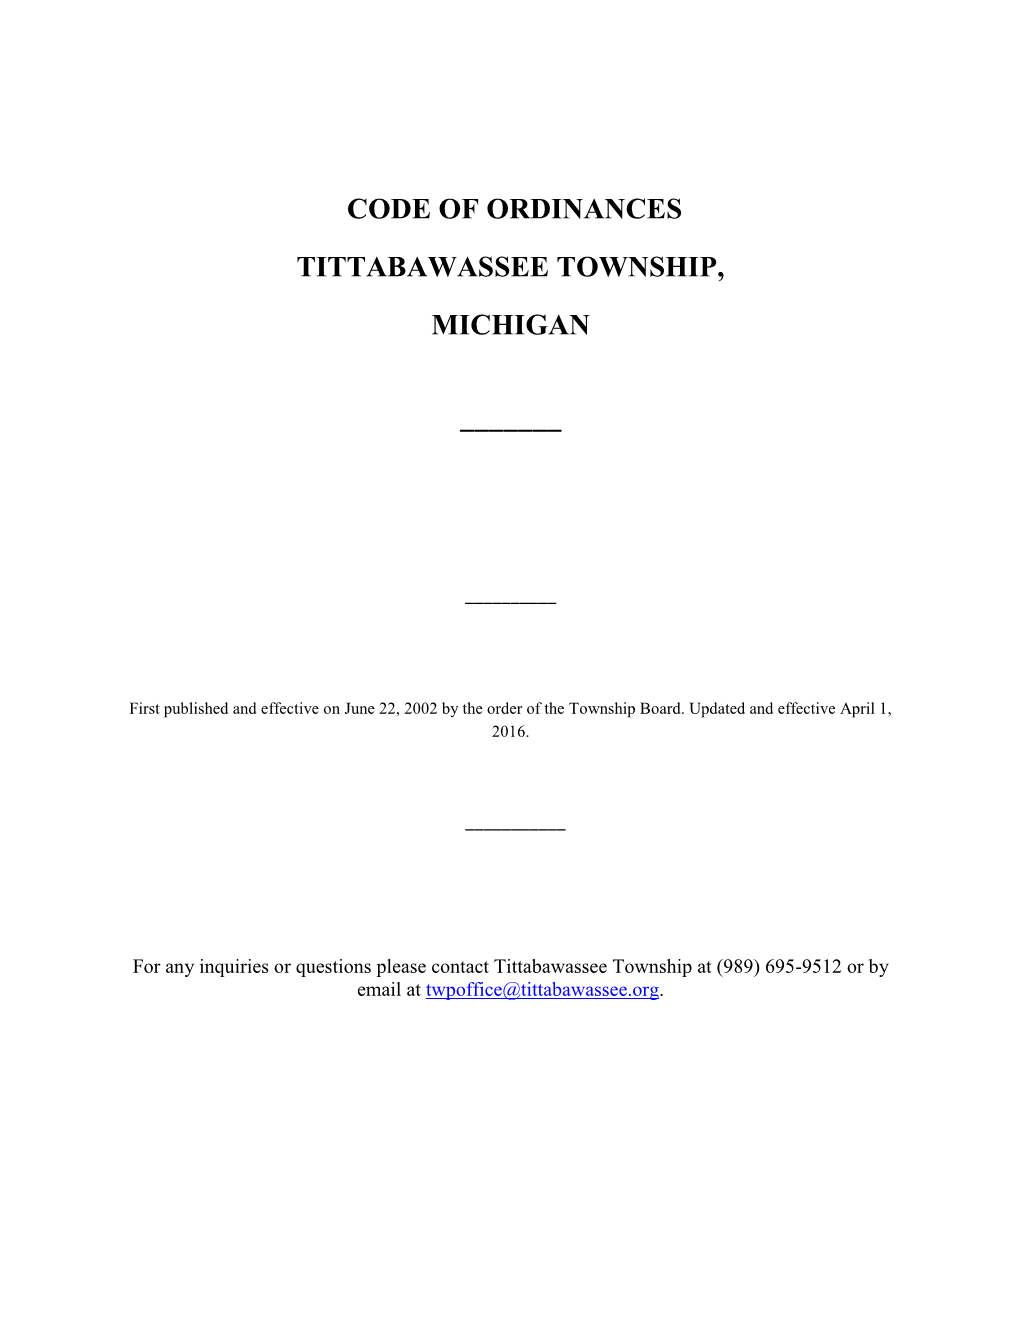 Code of Ordinances Tittabawassee Township, Michigan